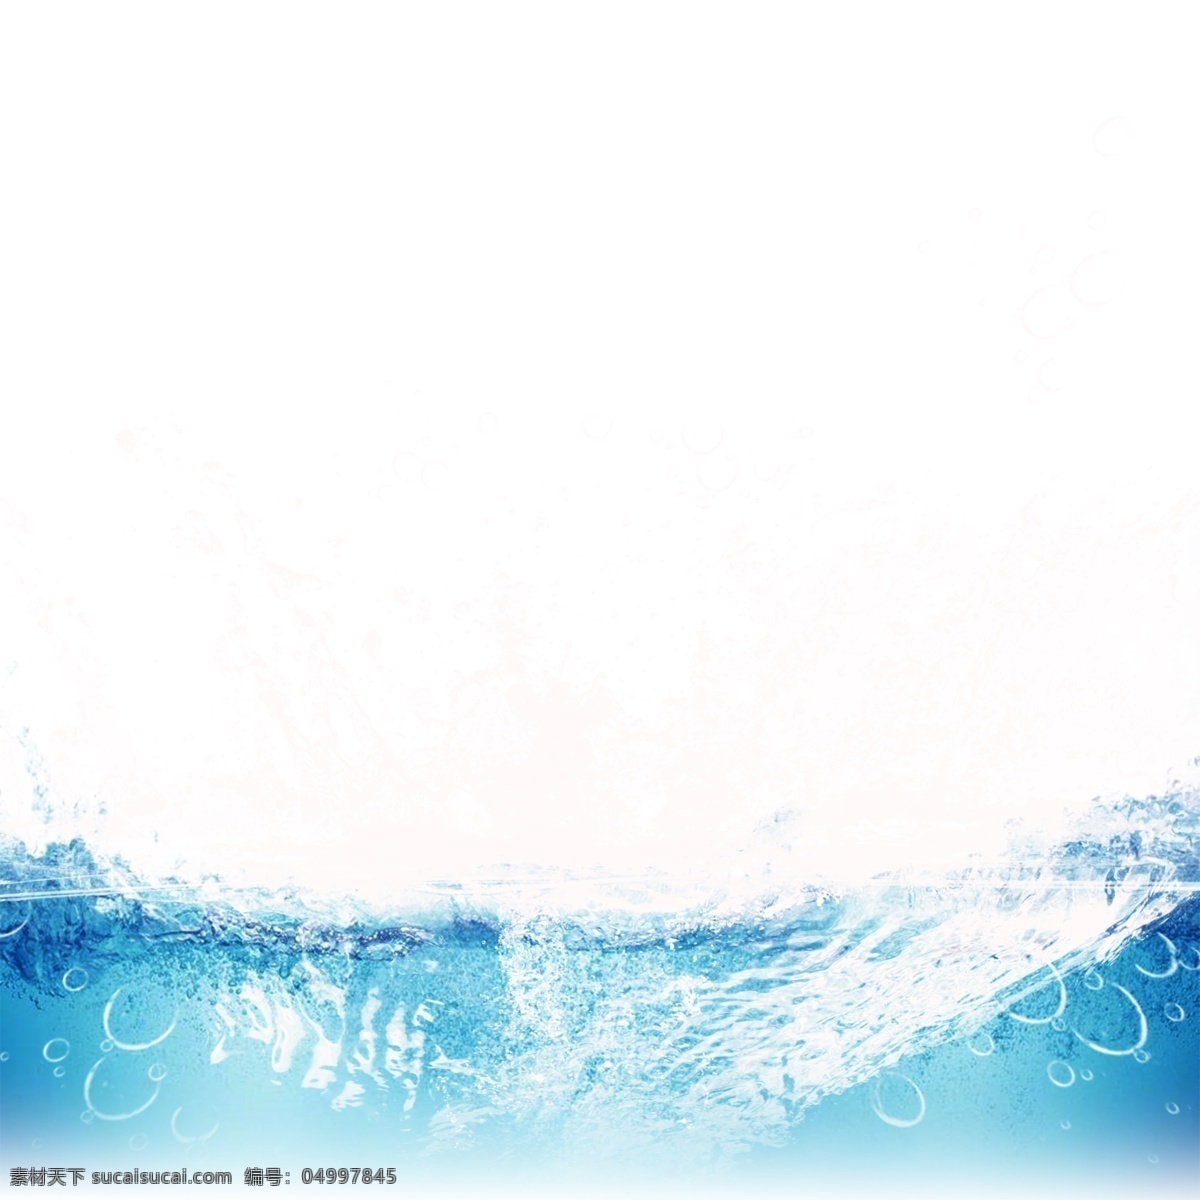 动感 波浪 水花 元素 蓝色水面 喷溅 水波纹 水滴 动感水 动感水浪 动感水纹 水效果 水波 水 飞溅